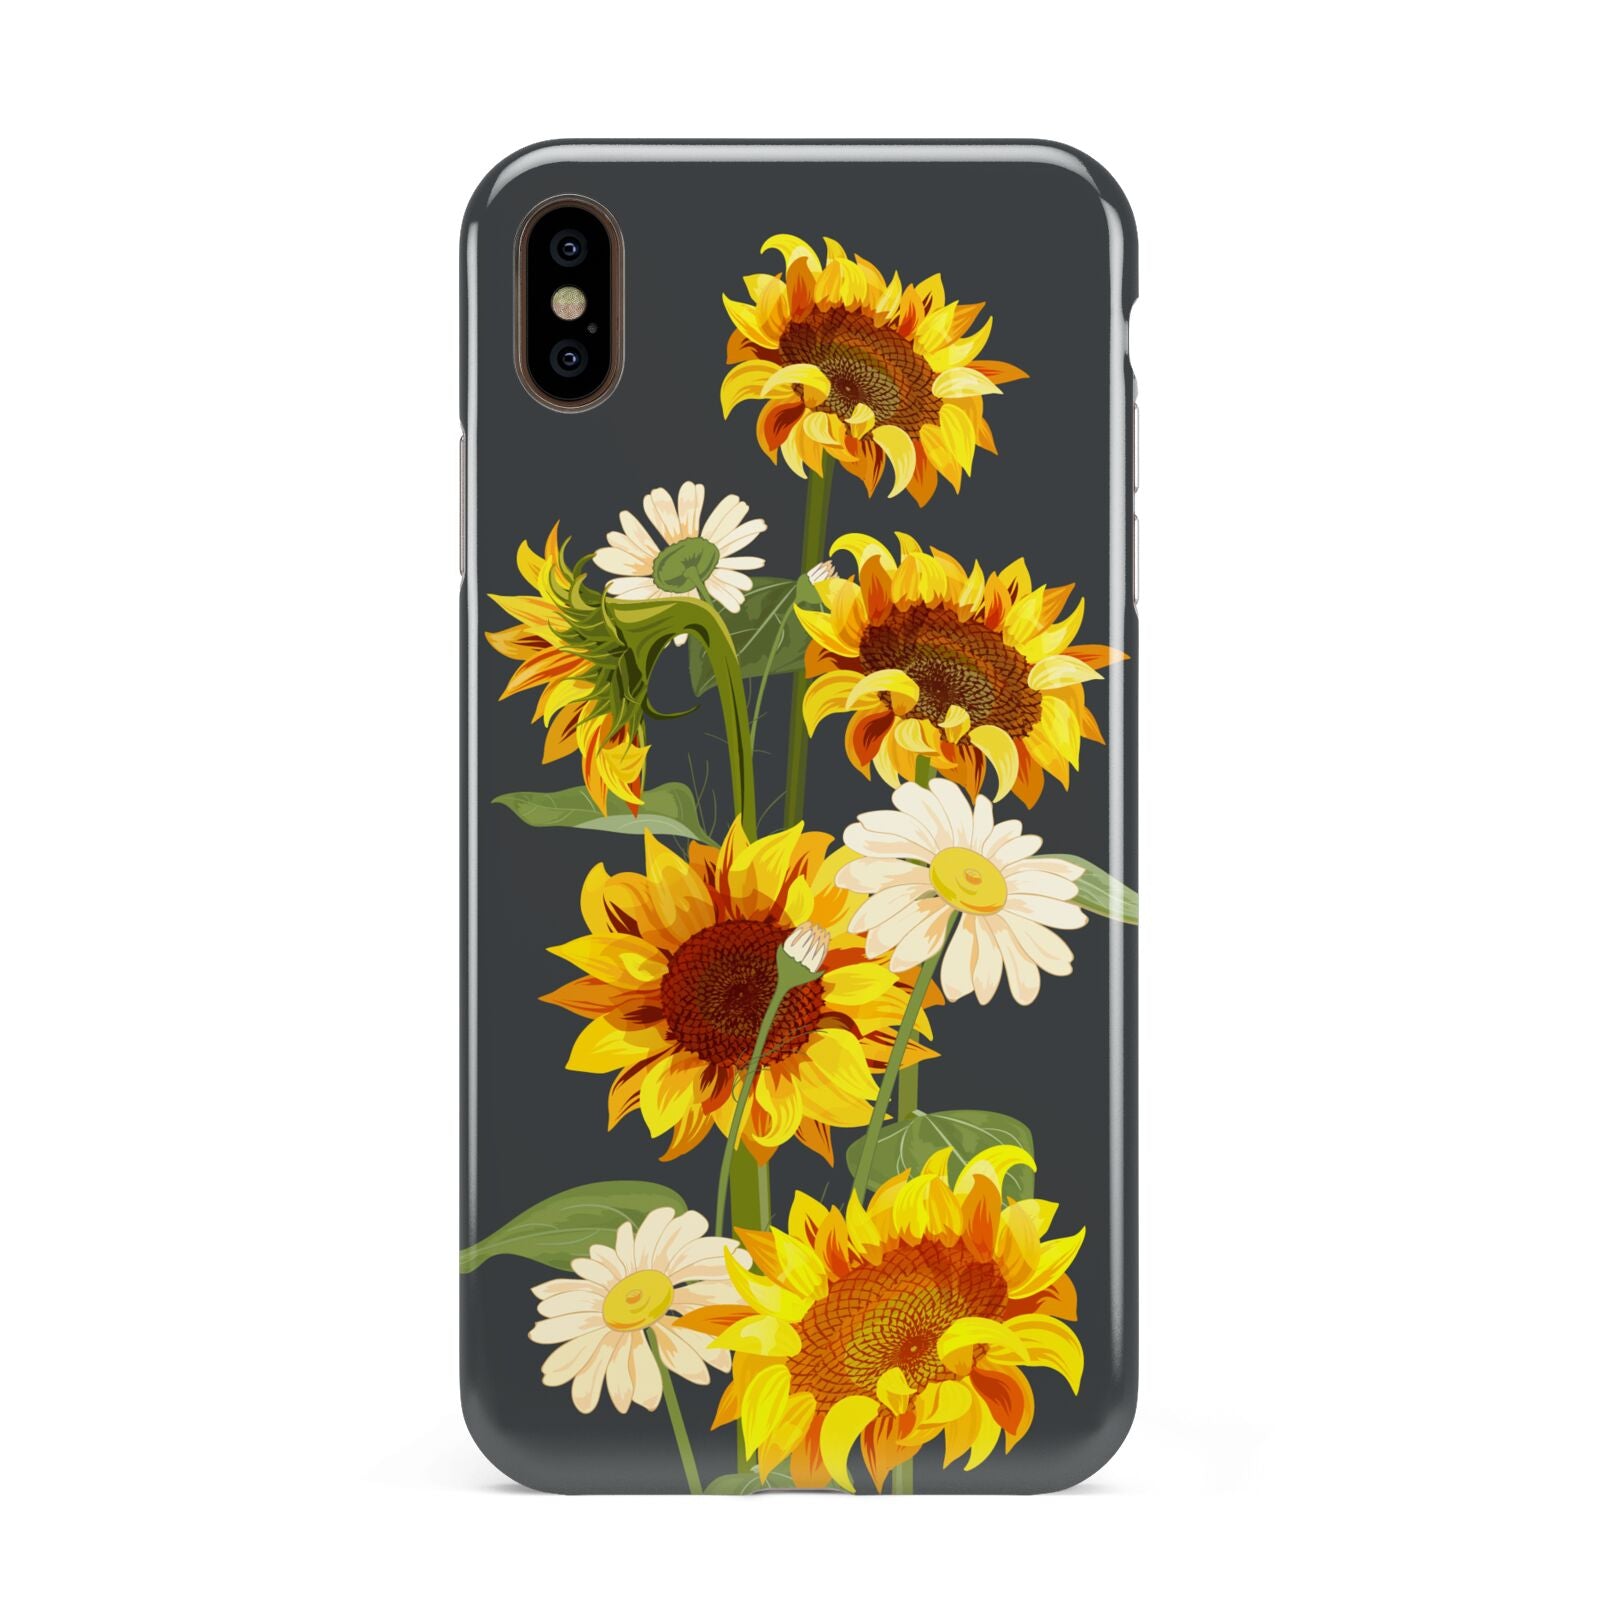 Sunflower Floral Apple iPhone Xs Max 3D Tough Case